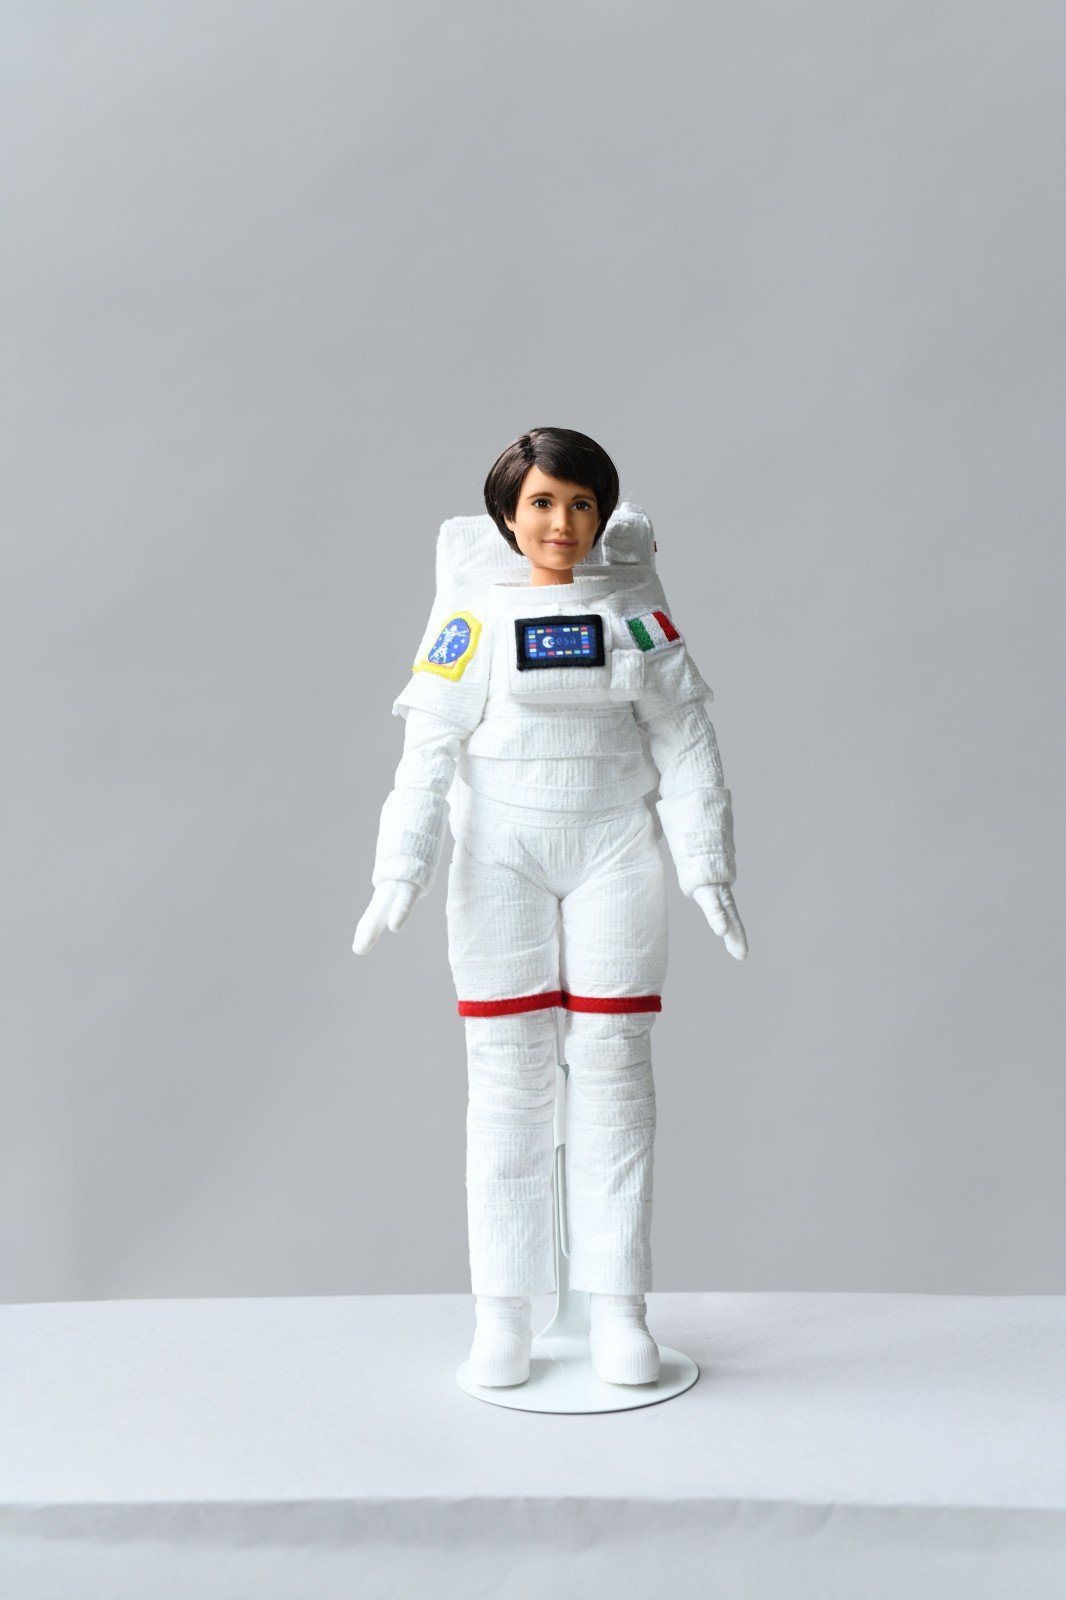 Барби отправляется в космос: женщина-астронавт стала новой ролевой моделью для кукол